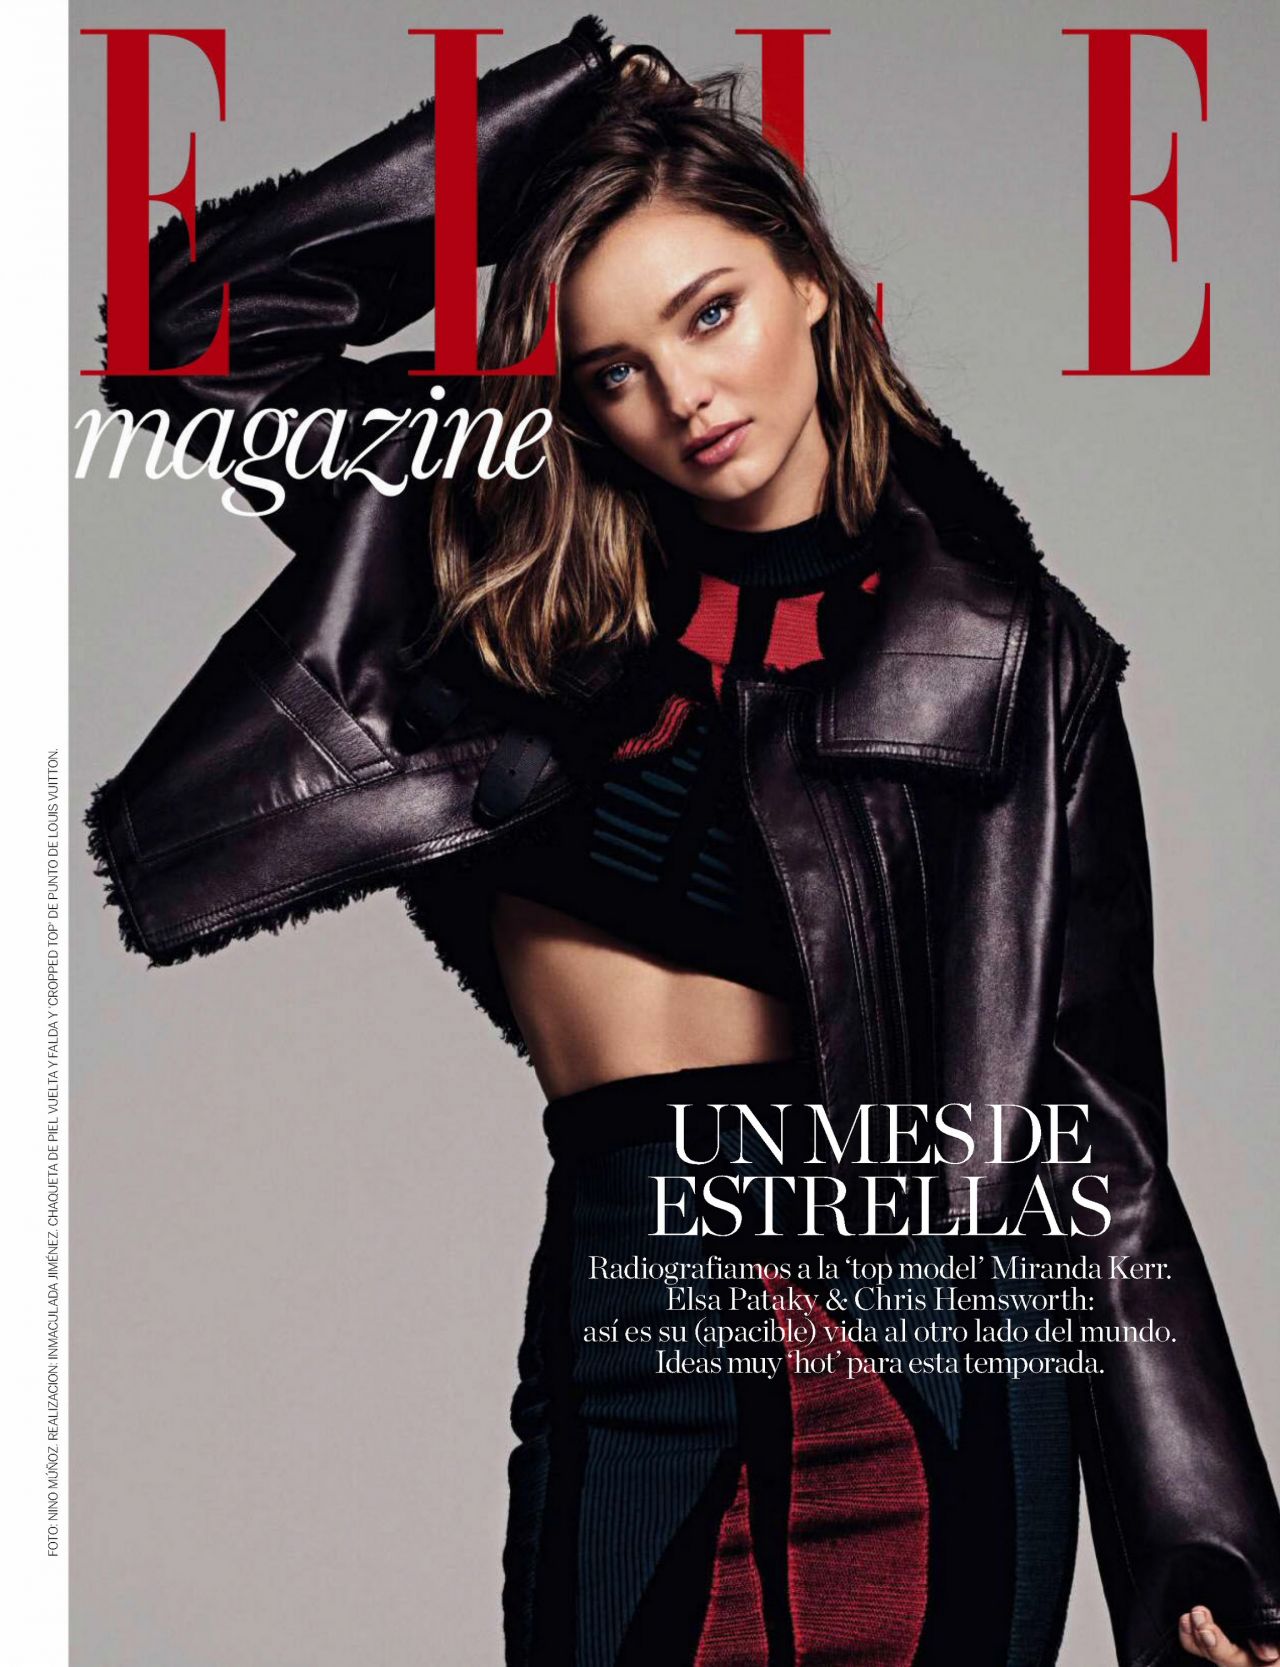 Miranda Kerr - Elle Magazine November 2016 Issue • CelebMafia